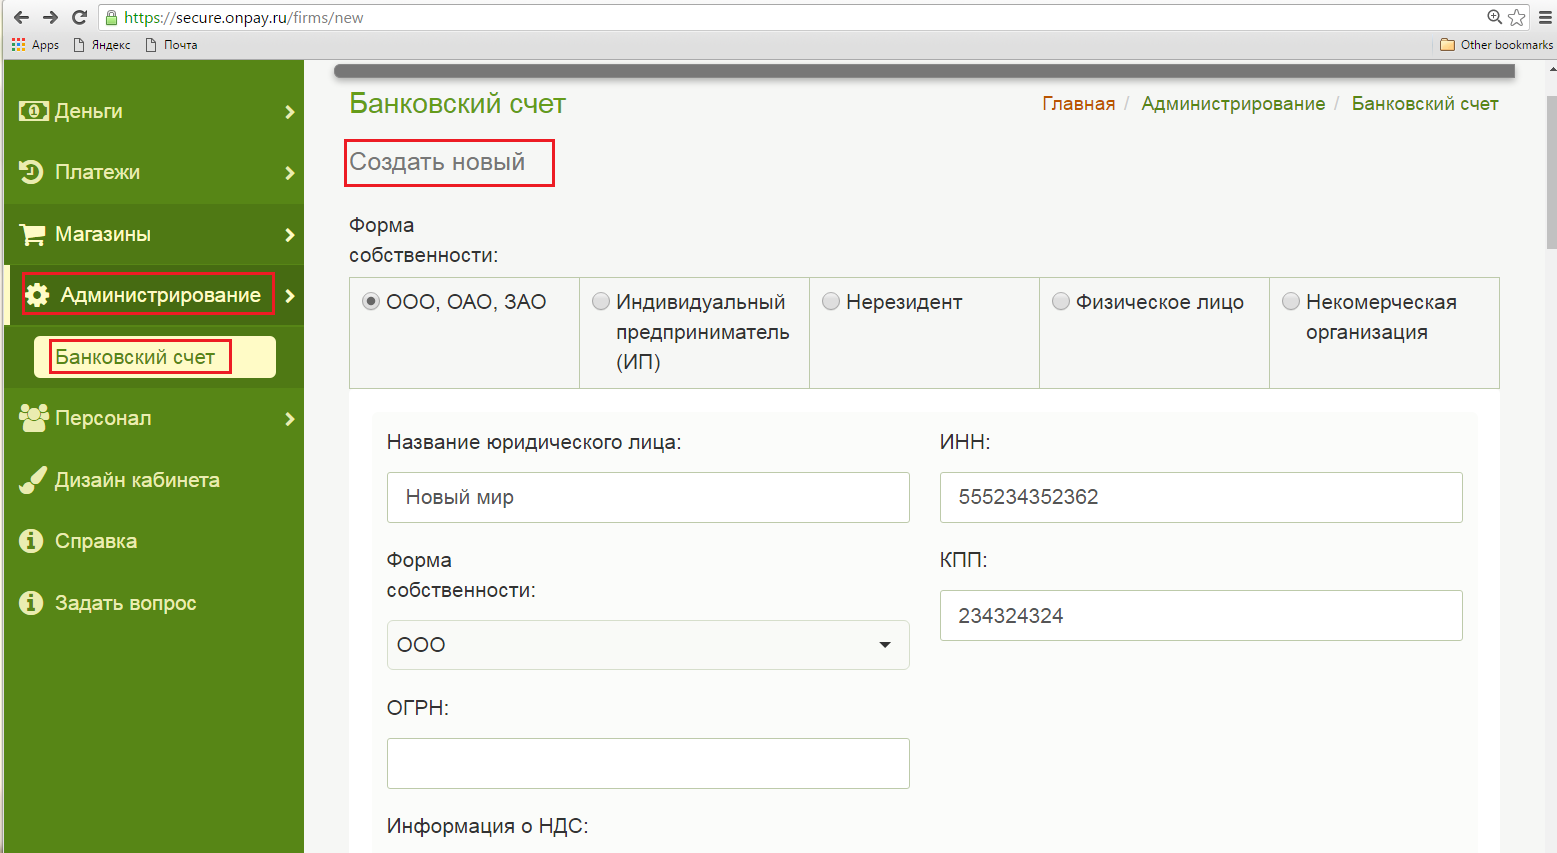 Academic ru ruwiki ru. ONPAY форма. ONPAY.